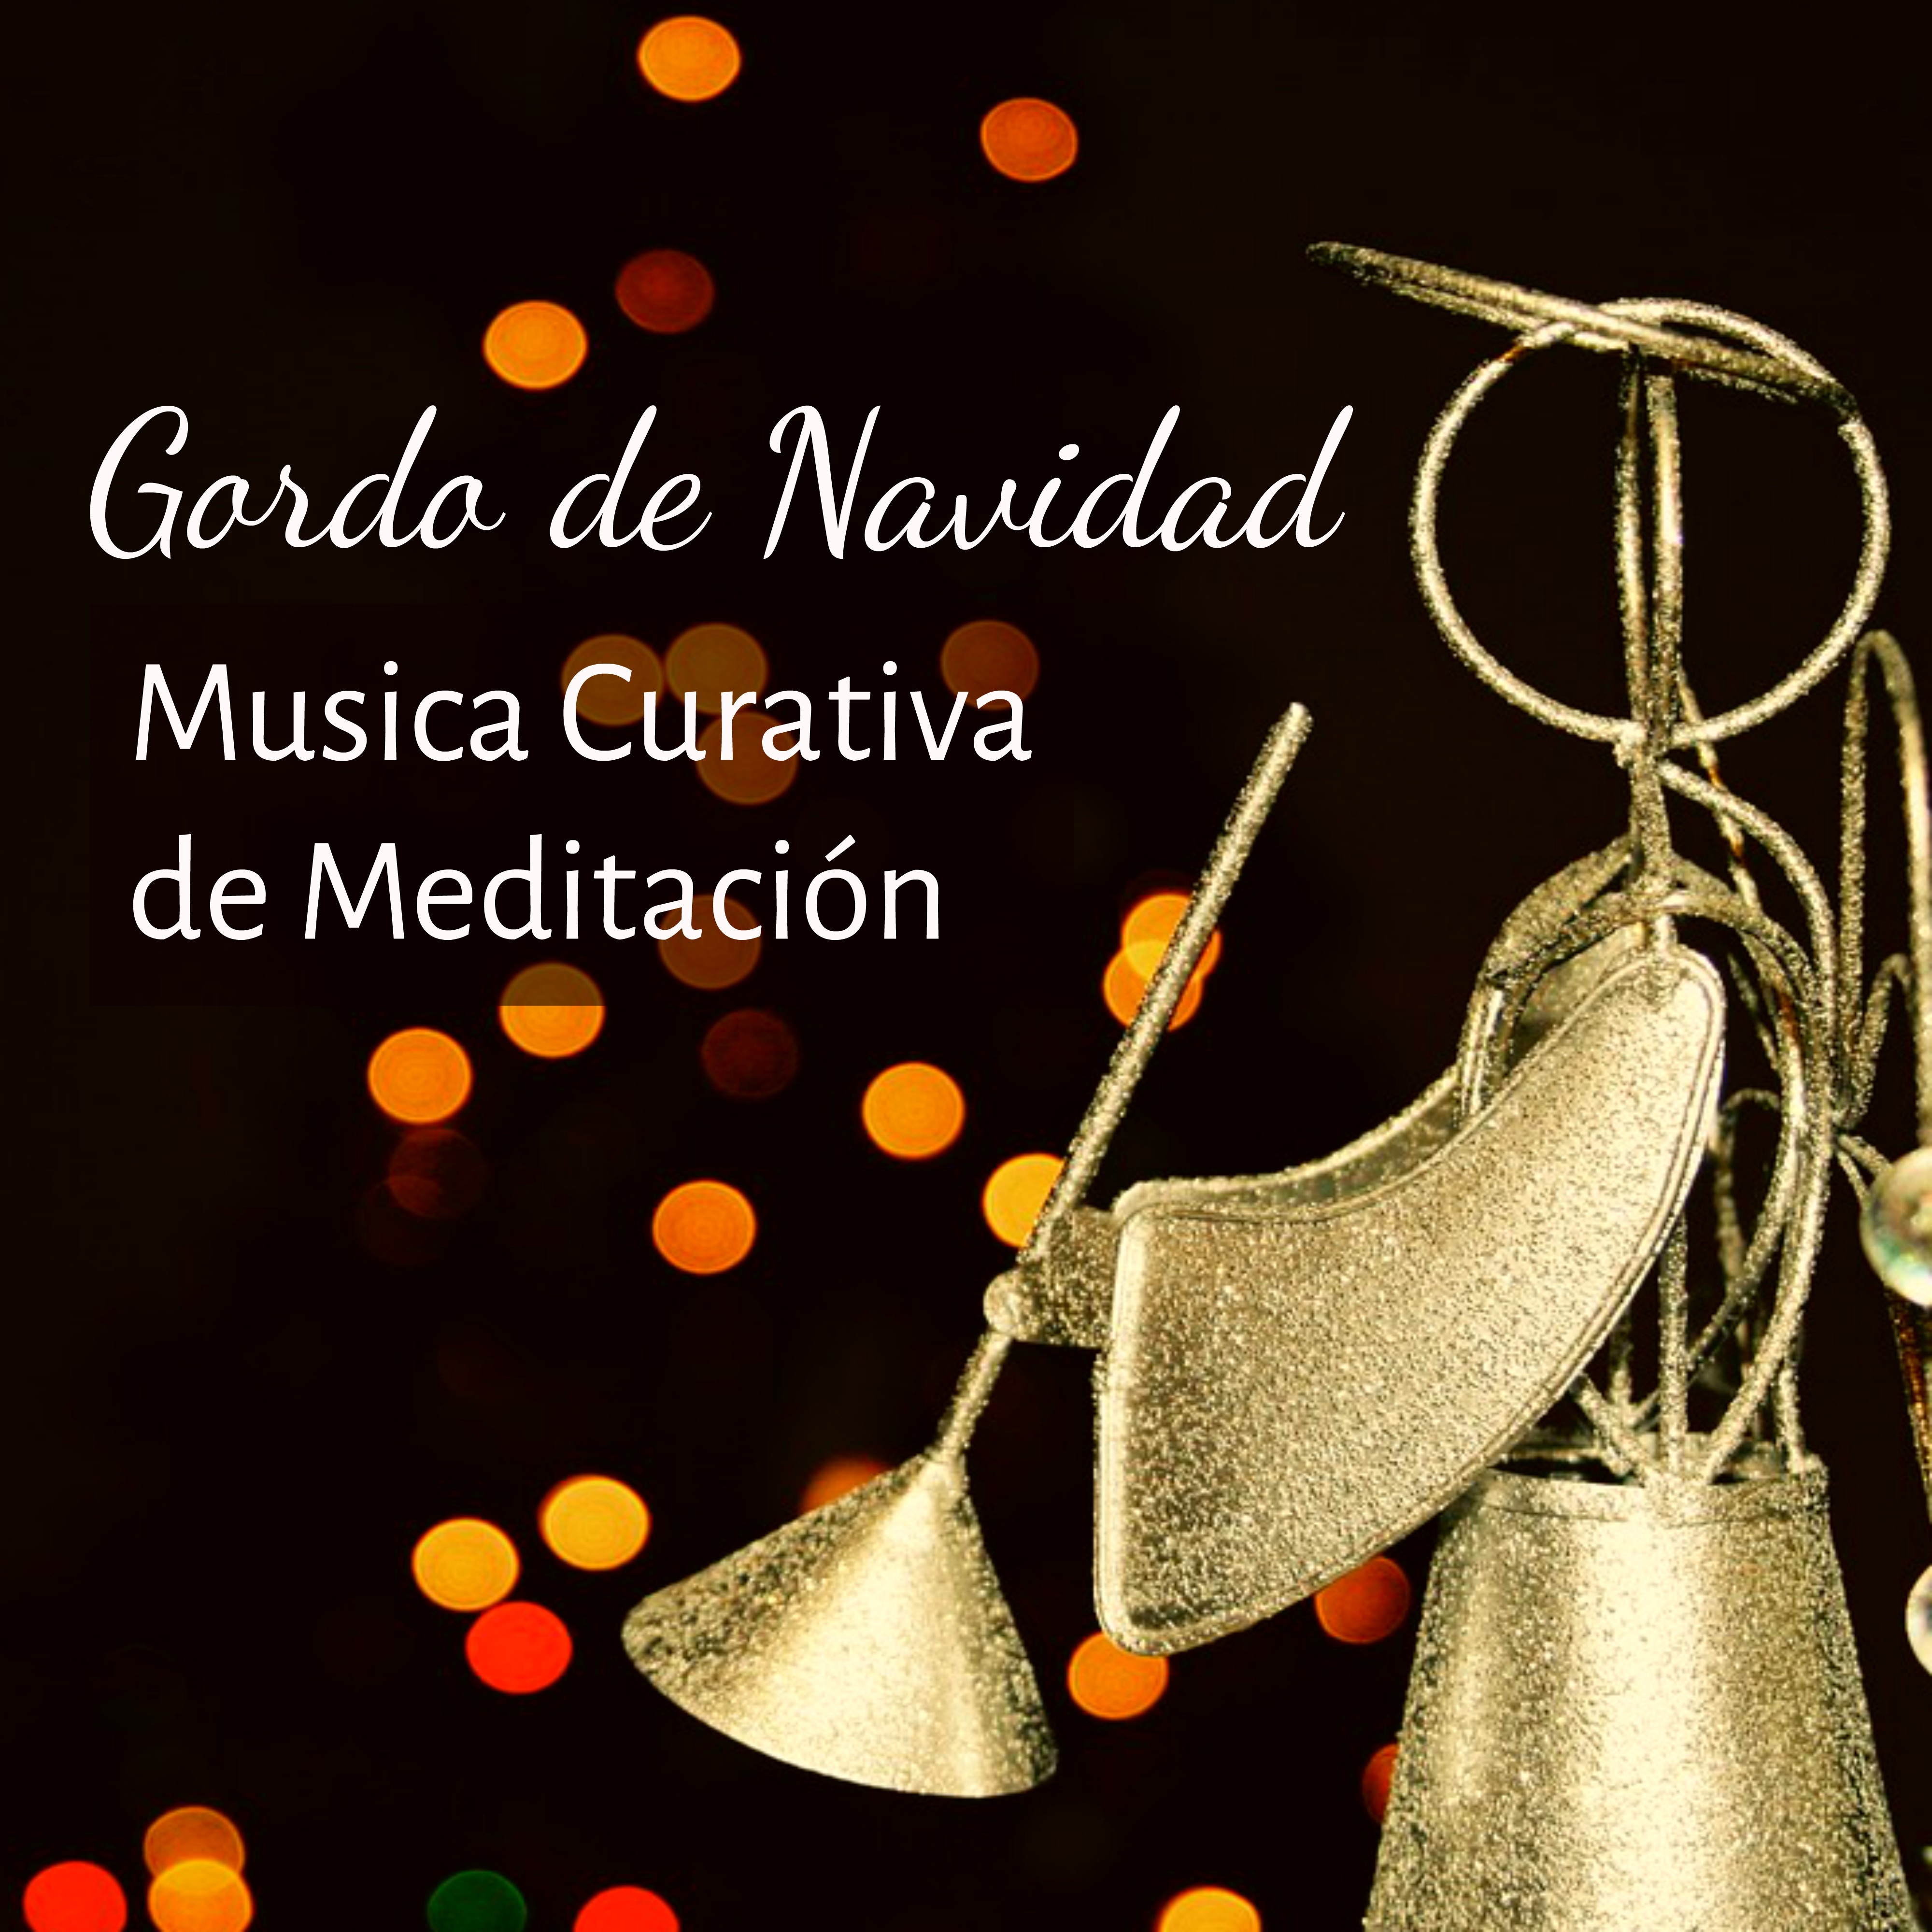 Gordo de Navidad  Musica Curativa de Meditacio n para Felices Fiestas Dulces Momentos con Sonidos de la Naturaleza Instrumentales